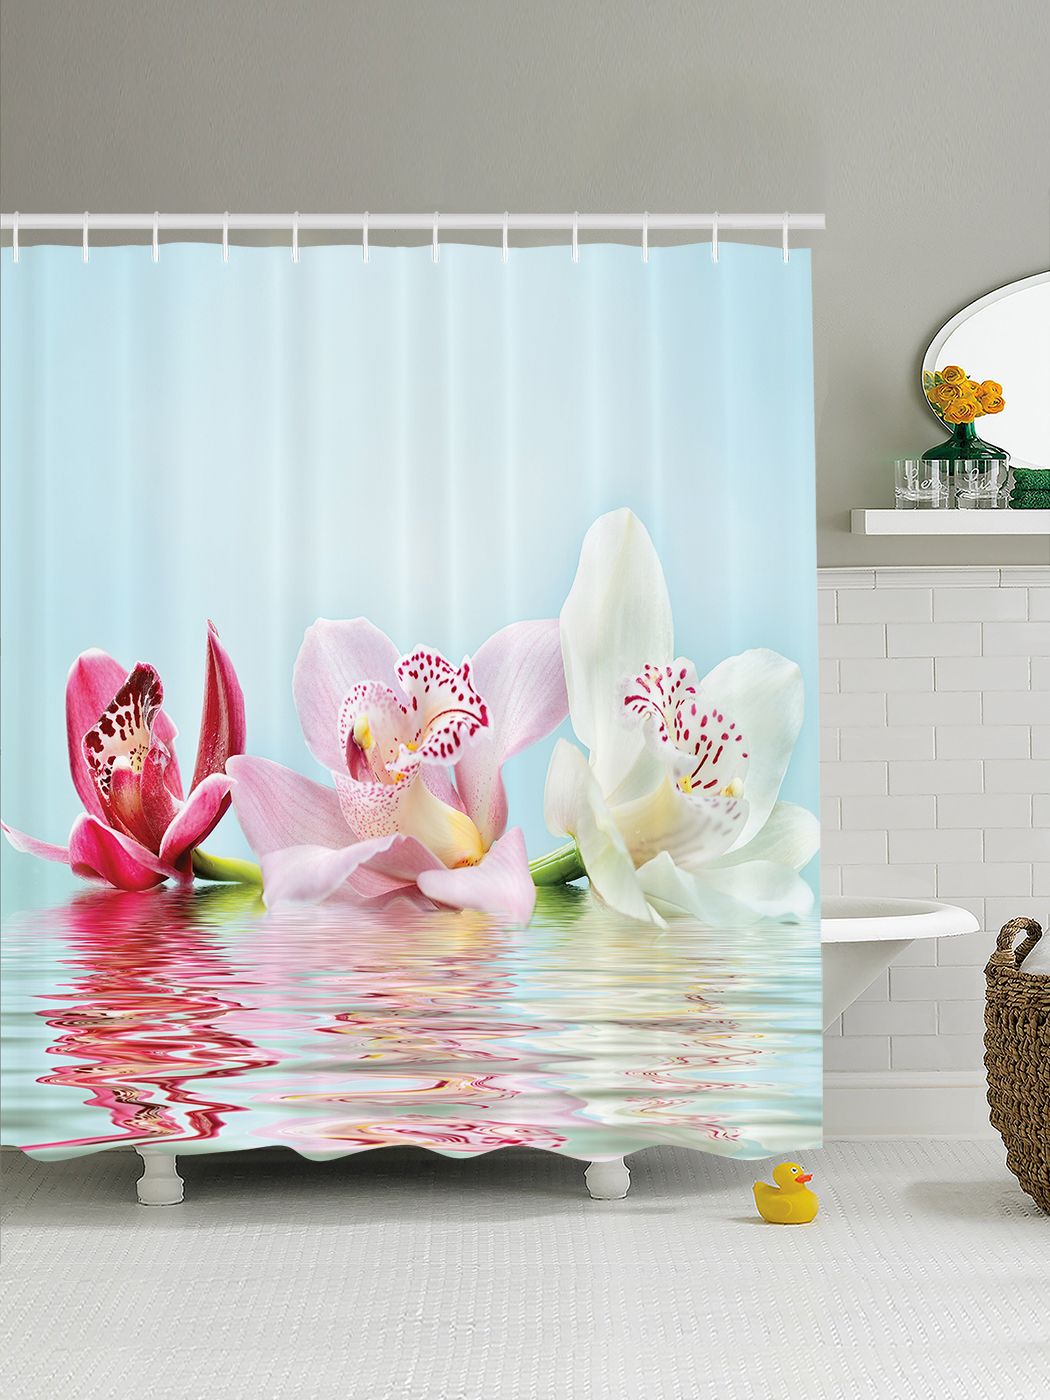 Шторка для ванны 150. Штора для ванной Валиант 3д. JOYARTY шторы для ванной. Шторки в ванную комнату с орхидеями. Шторка для ванной "Орхидея".